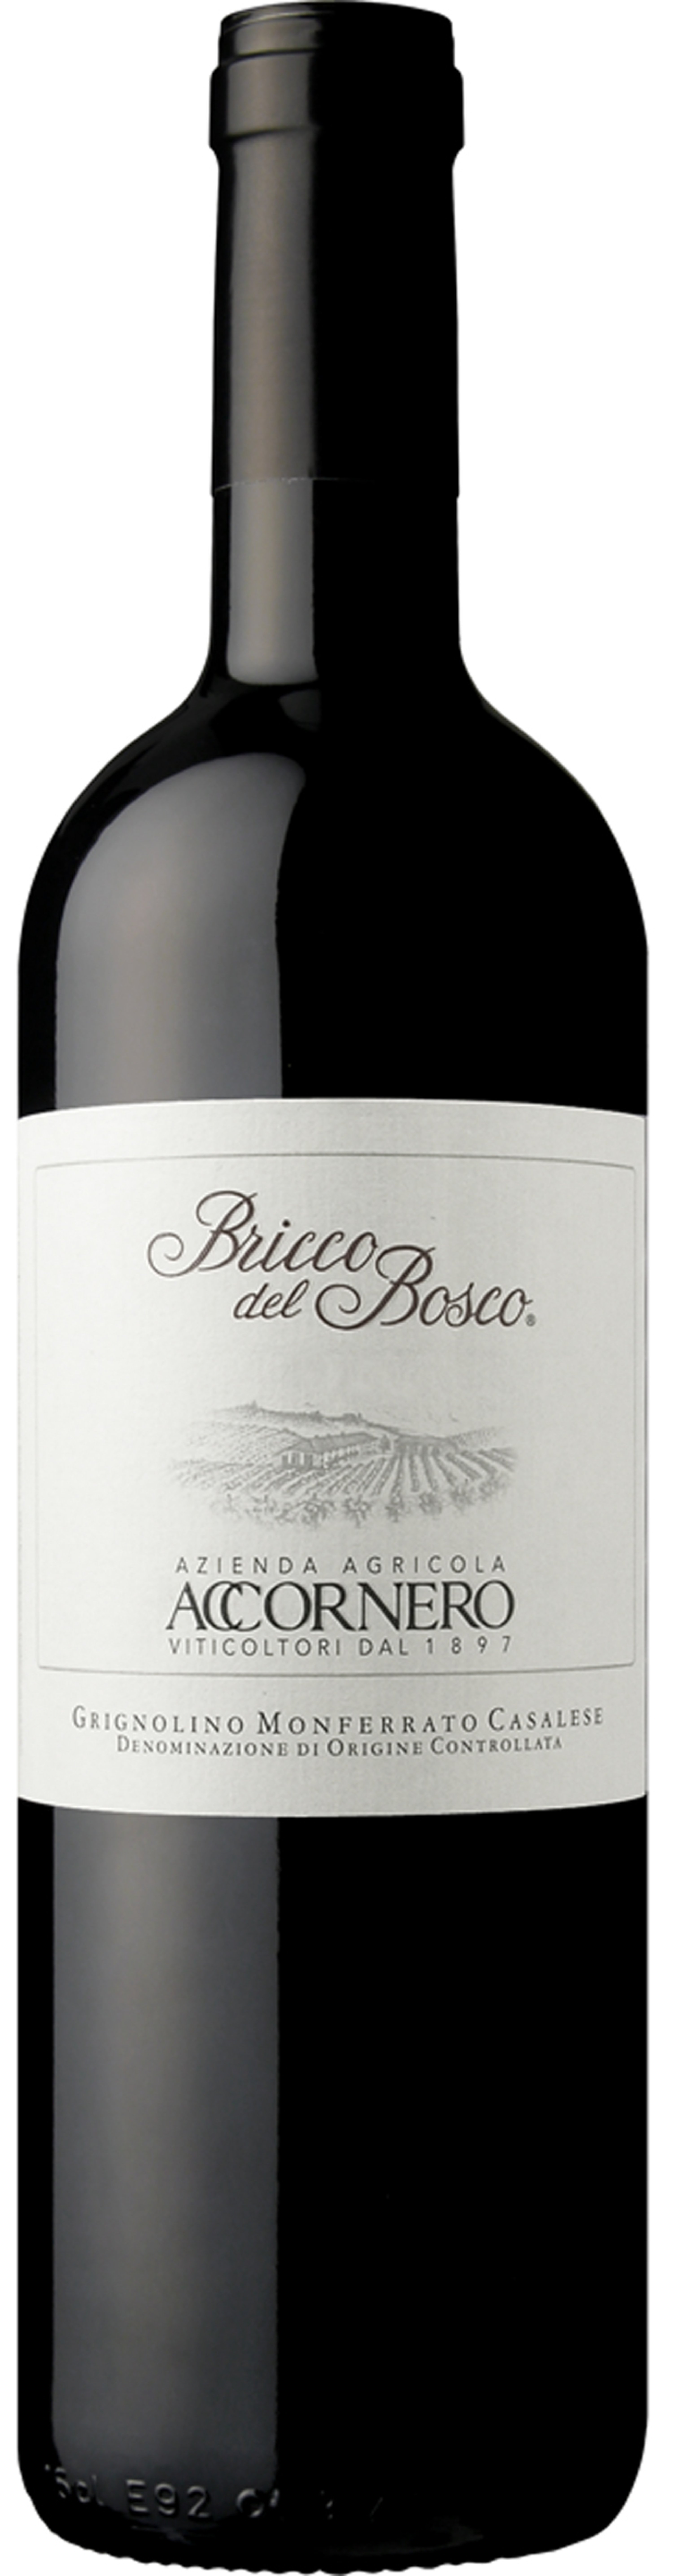 Wein Accornero Bricco del Bosco 